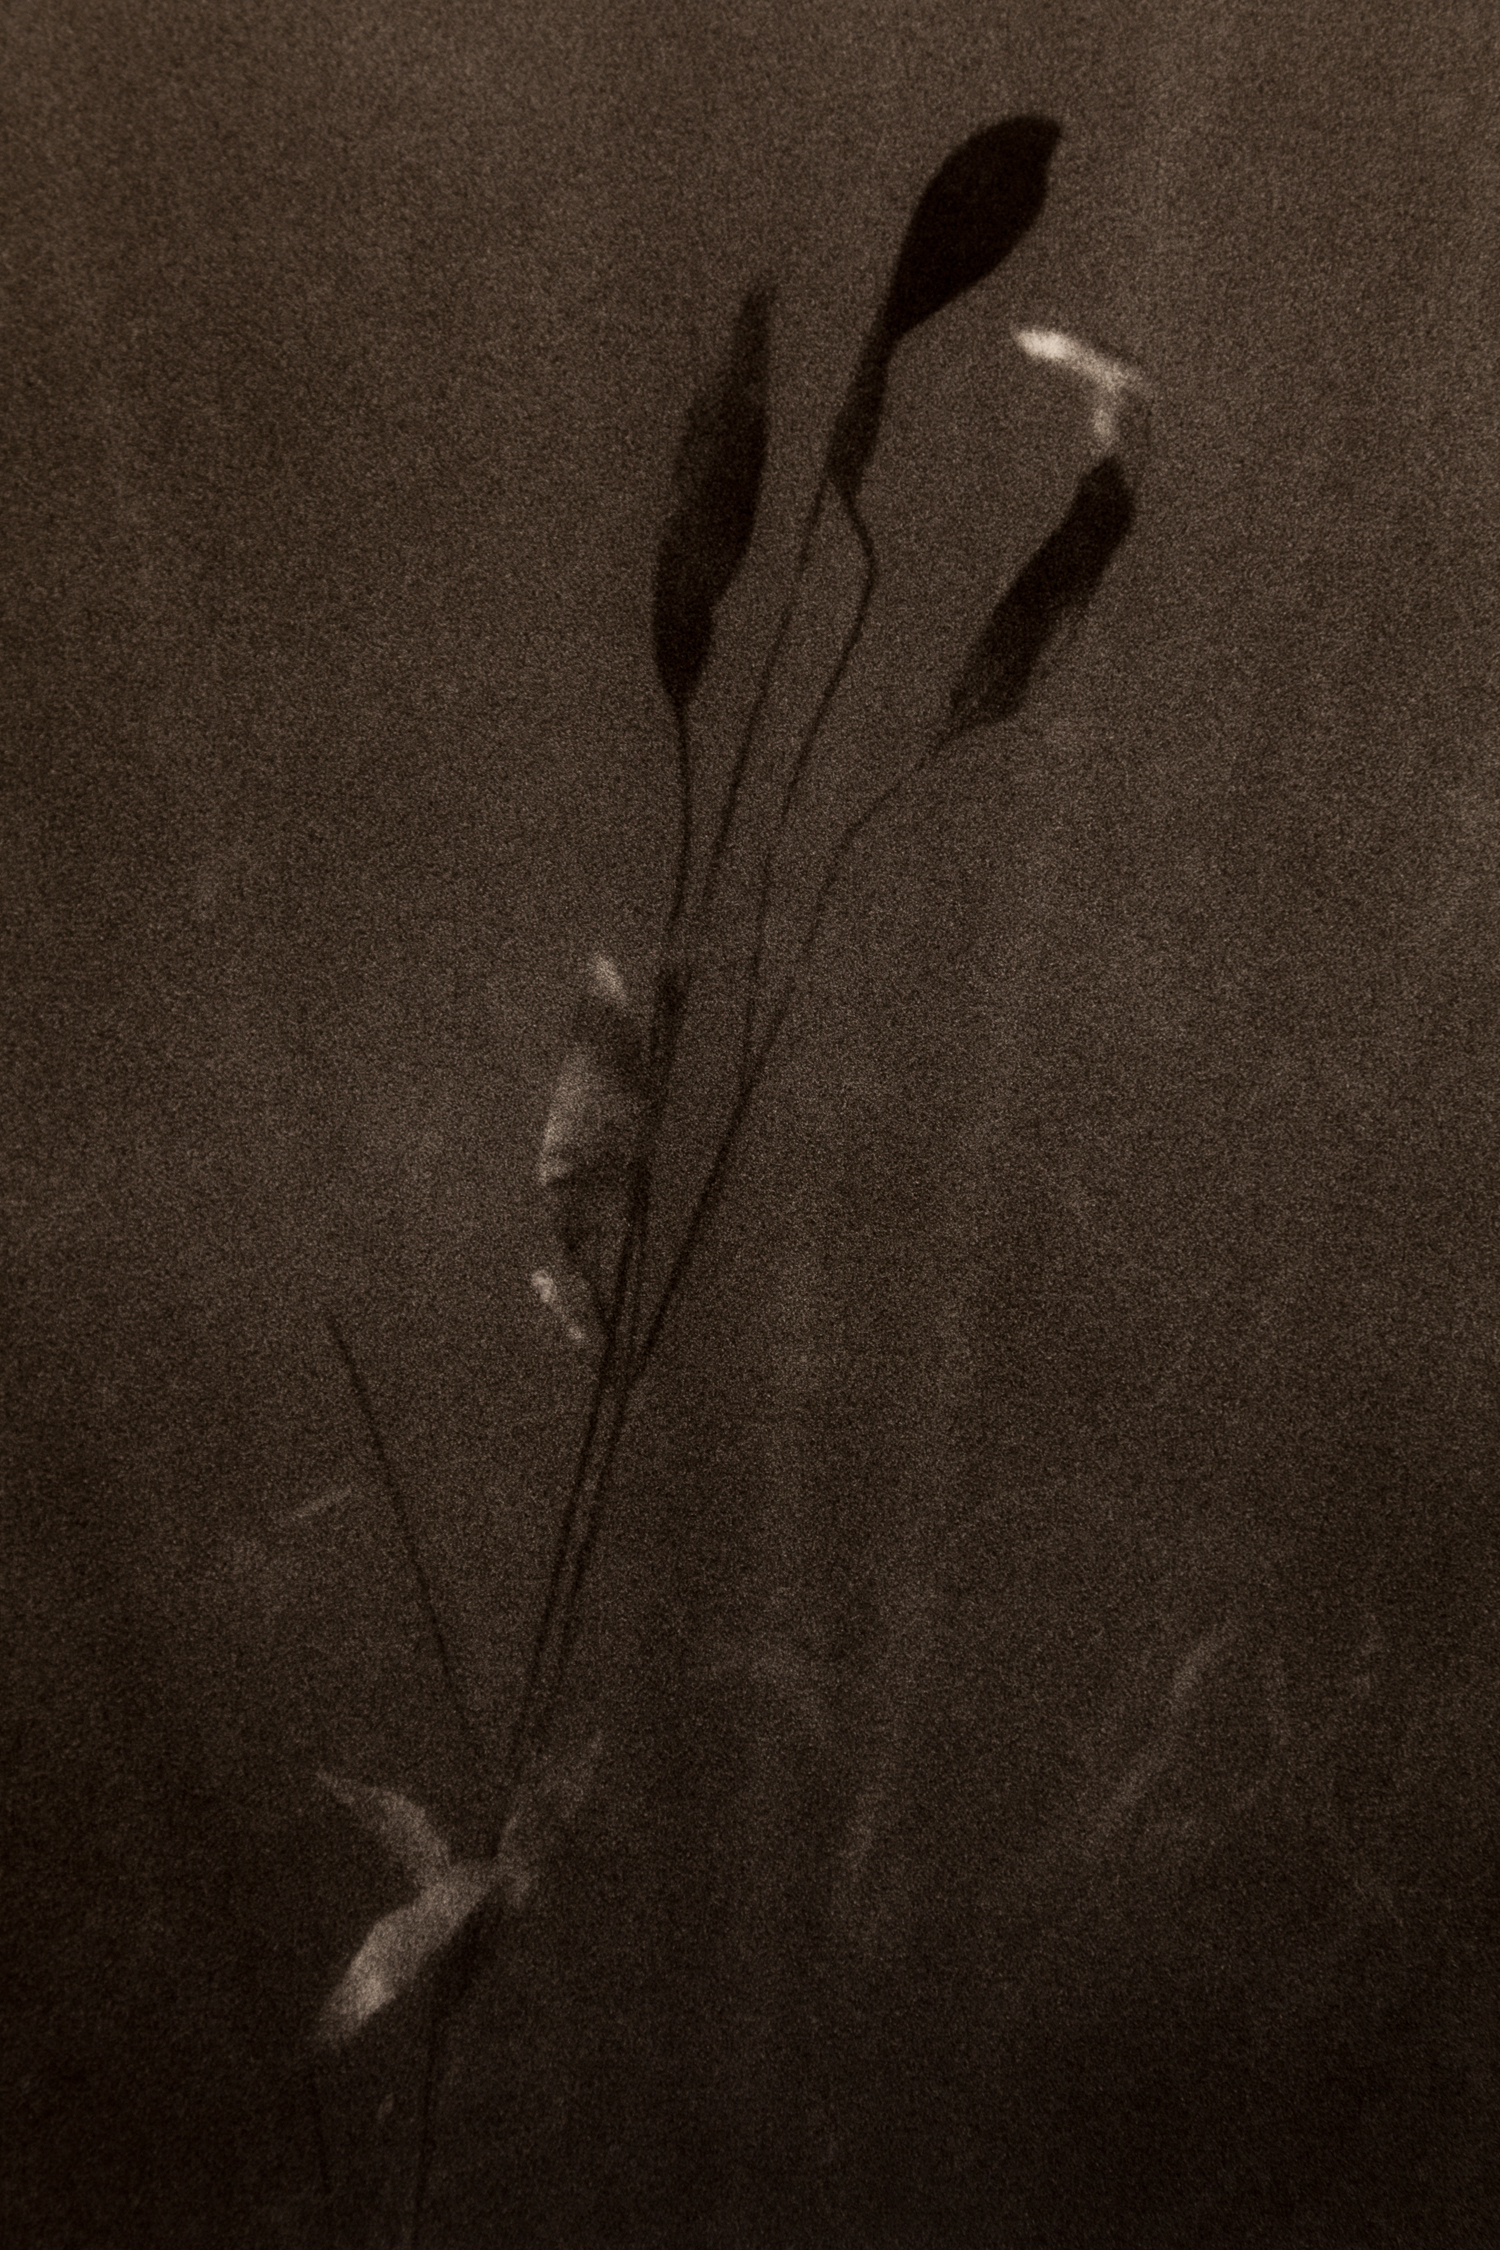 Underwater-48.jpg